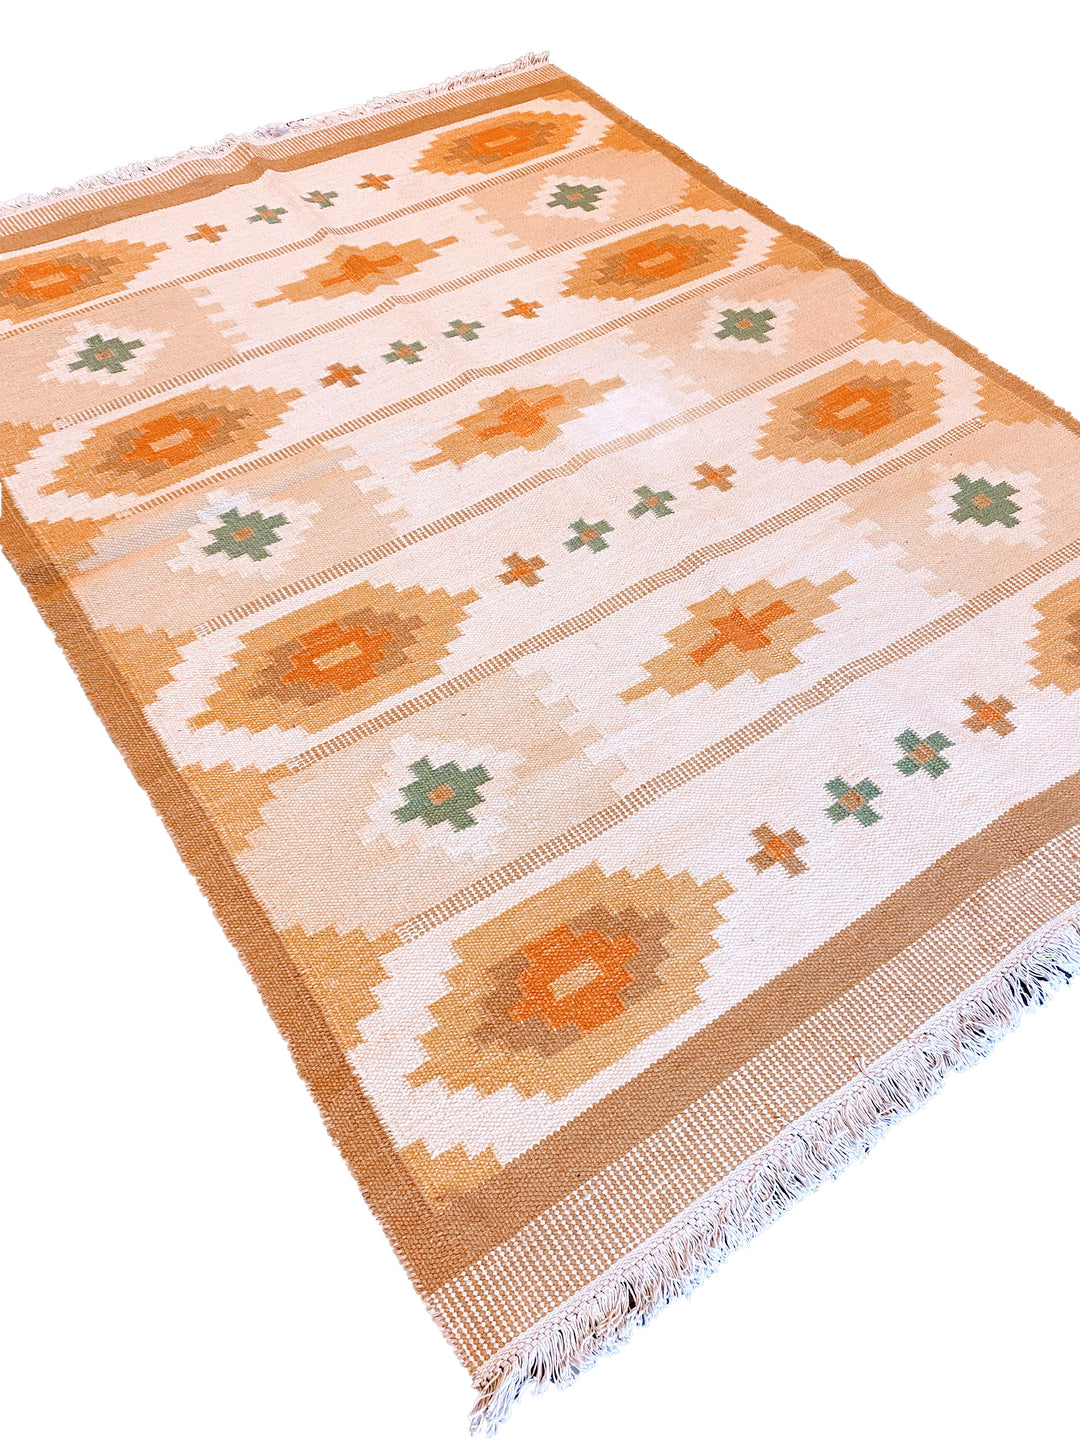 Desert Diamond - Size: 7.5 x 5.5 - Imam Carpet Co